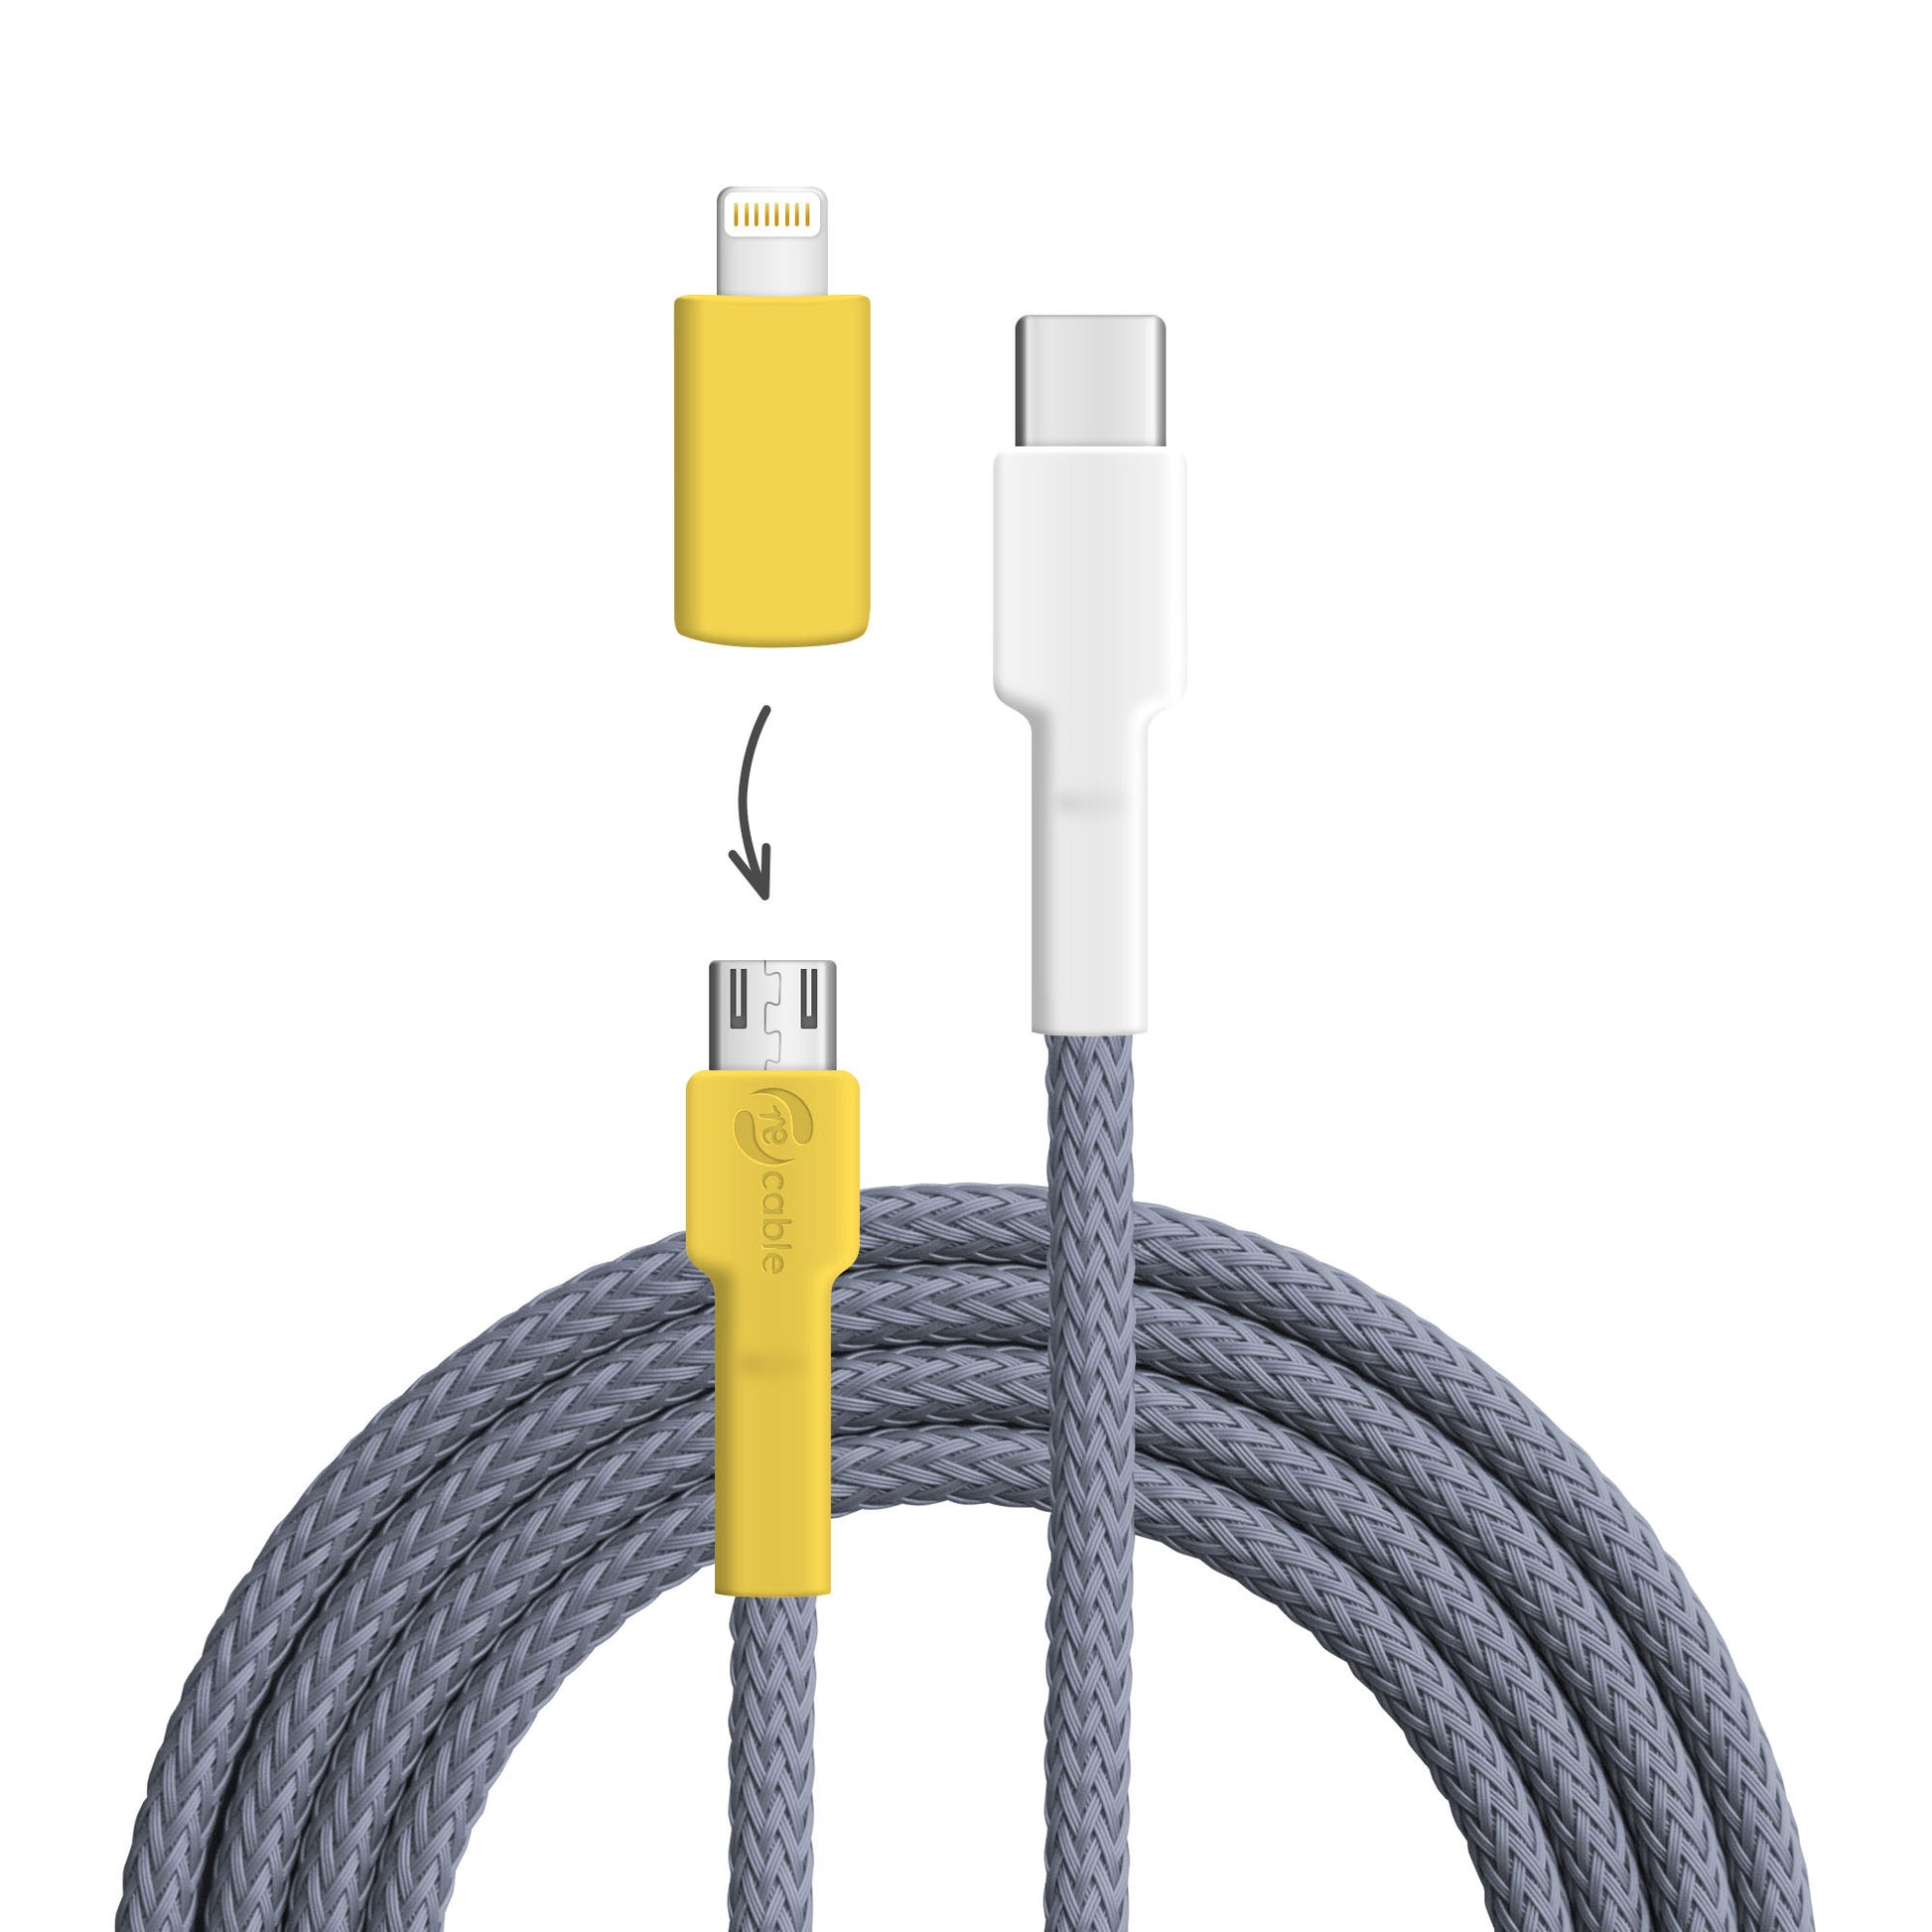 USB-Kabel, Design: Gelb­kehlvireo, Anschlüsse: USB C auf Micro-USB mit Lightning Adapter (nicht verbunden)